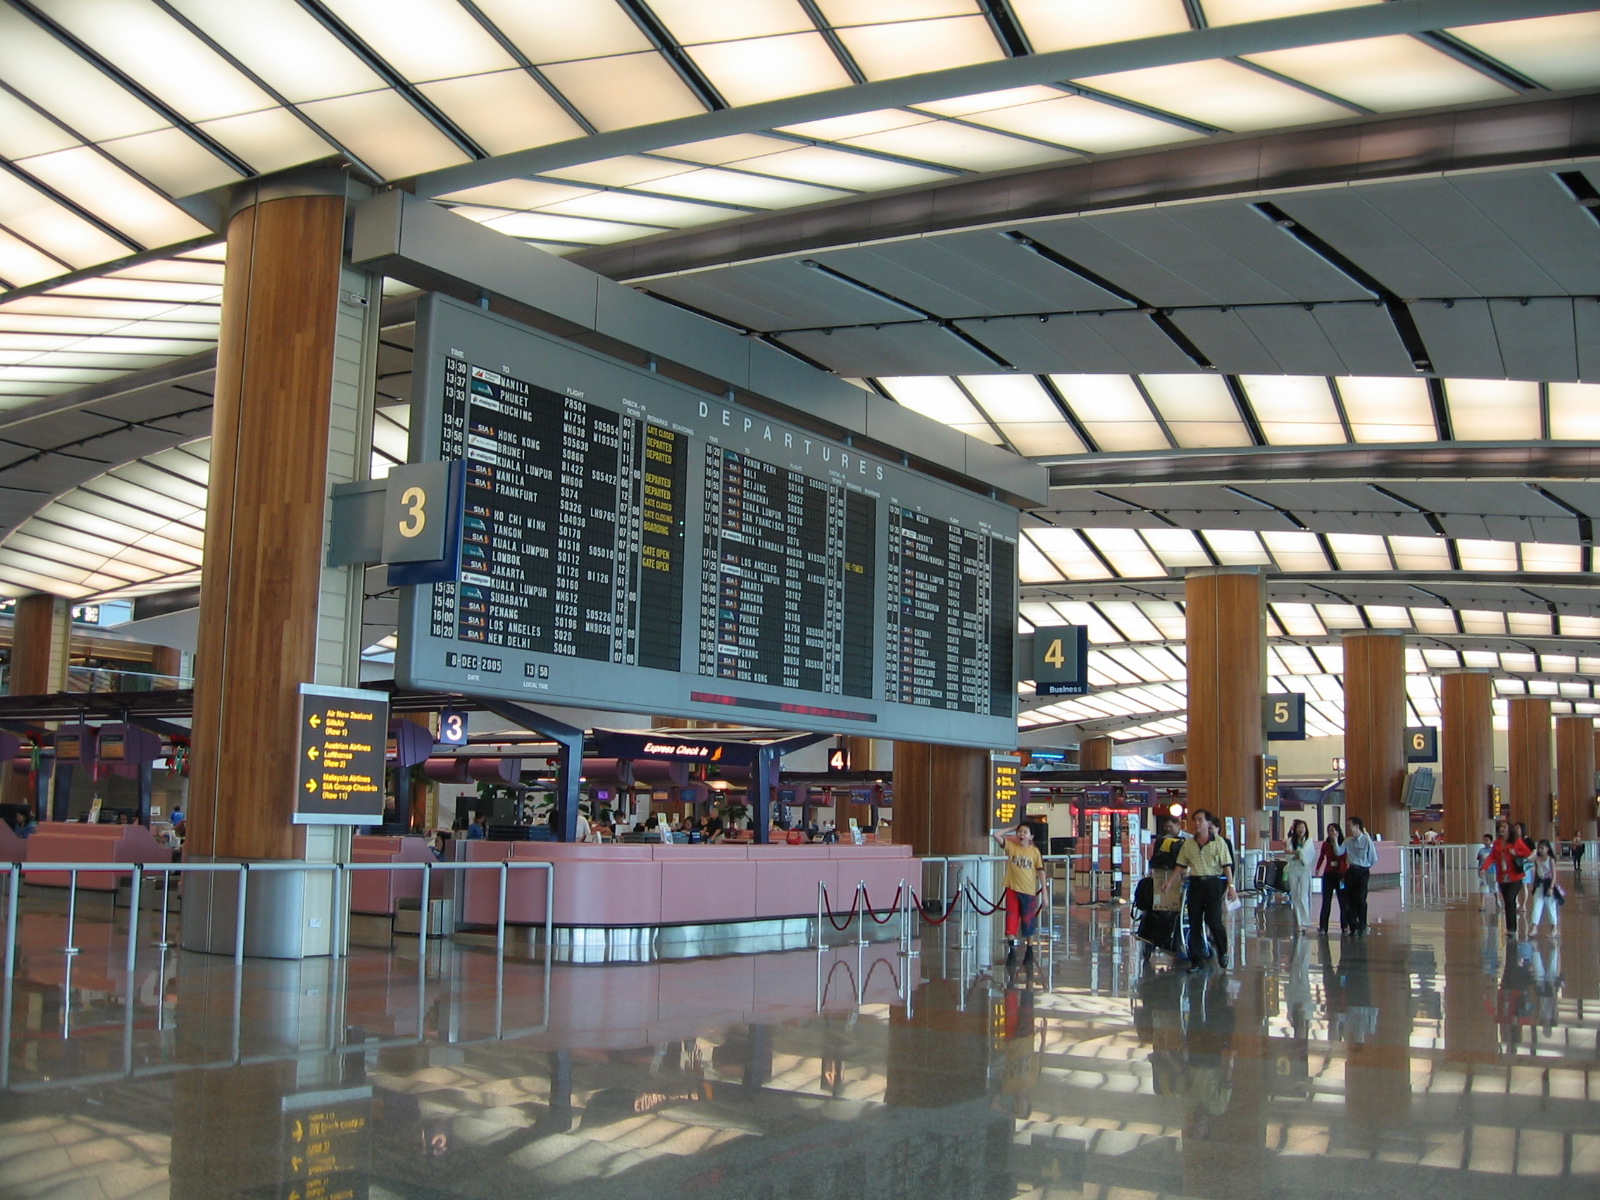 Changi Airport Terminal 3 Parking